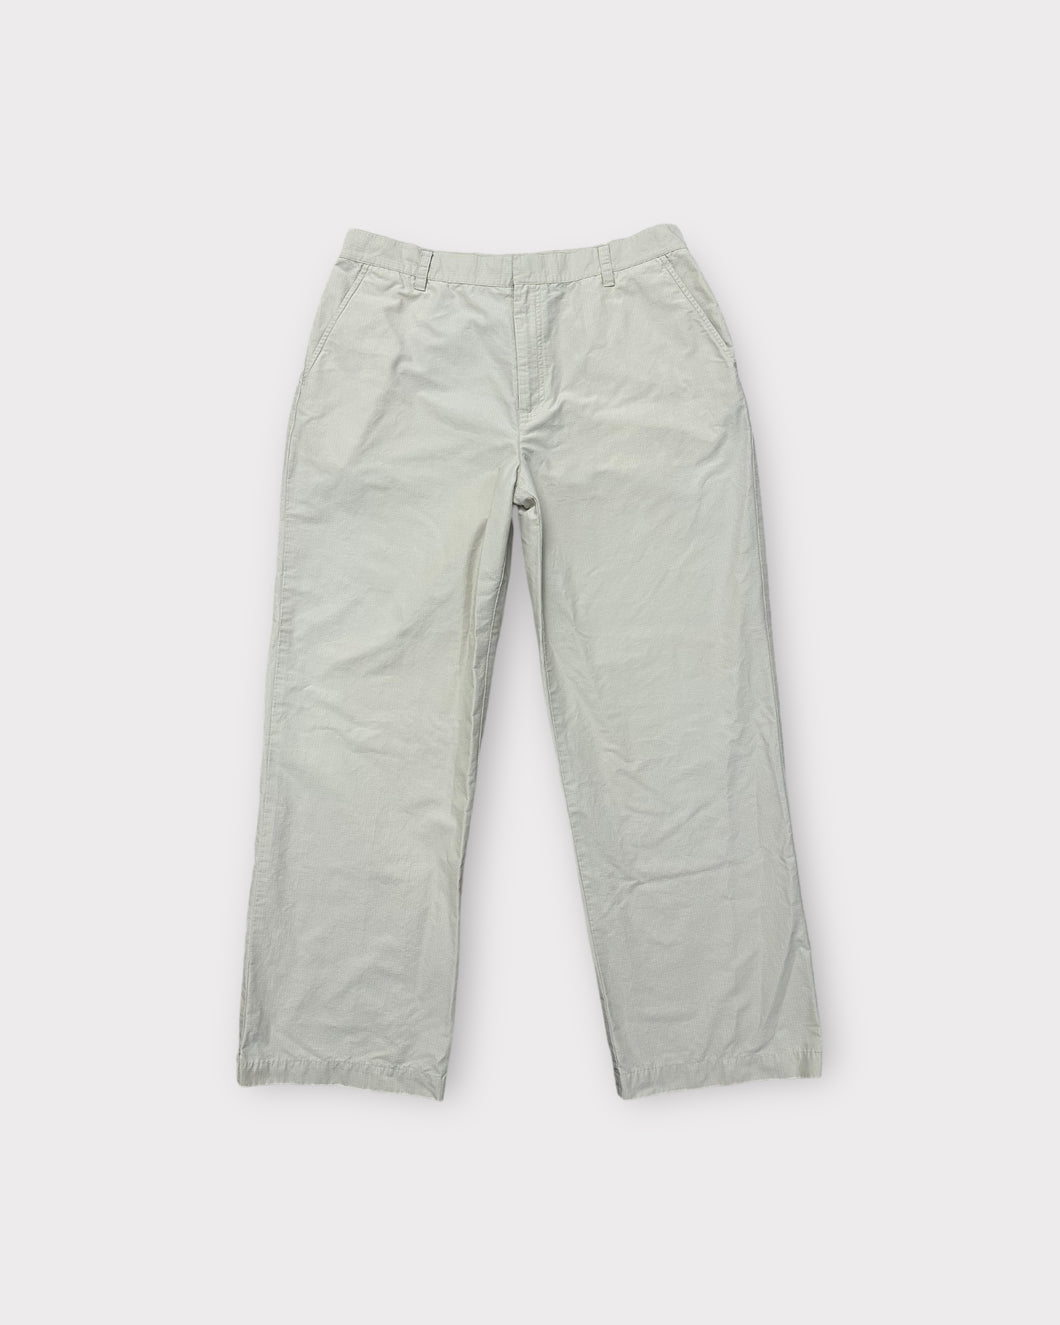 Ralph Lauren Khaki High Waisted Cargo Pants (12)